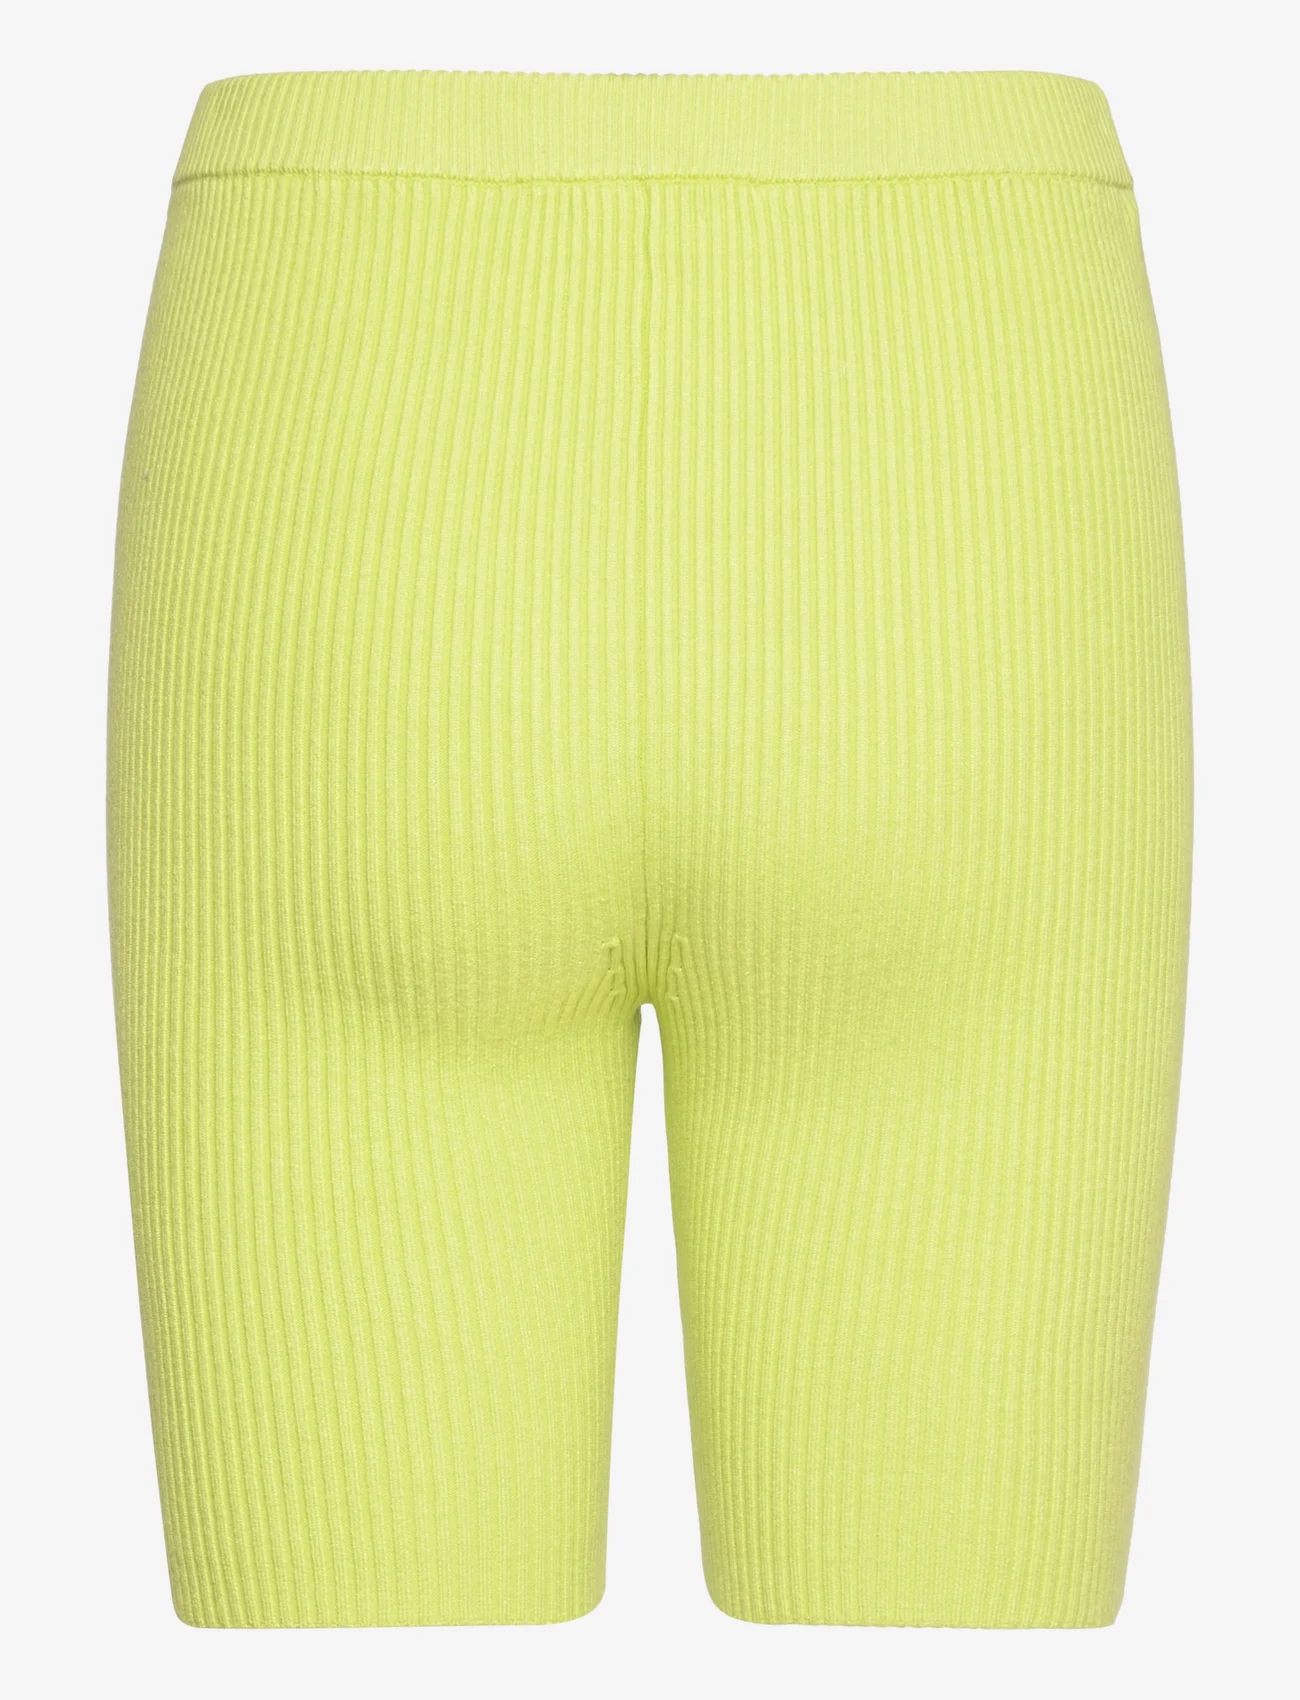 Samsøe Samsøe - Luna shorts 10490 - cycling shorts - daiquiri green - 1